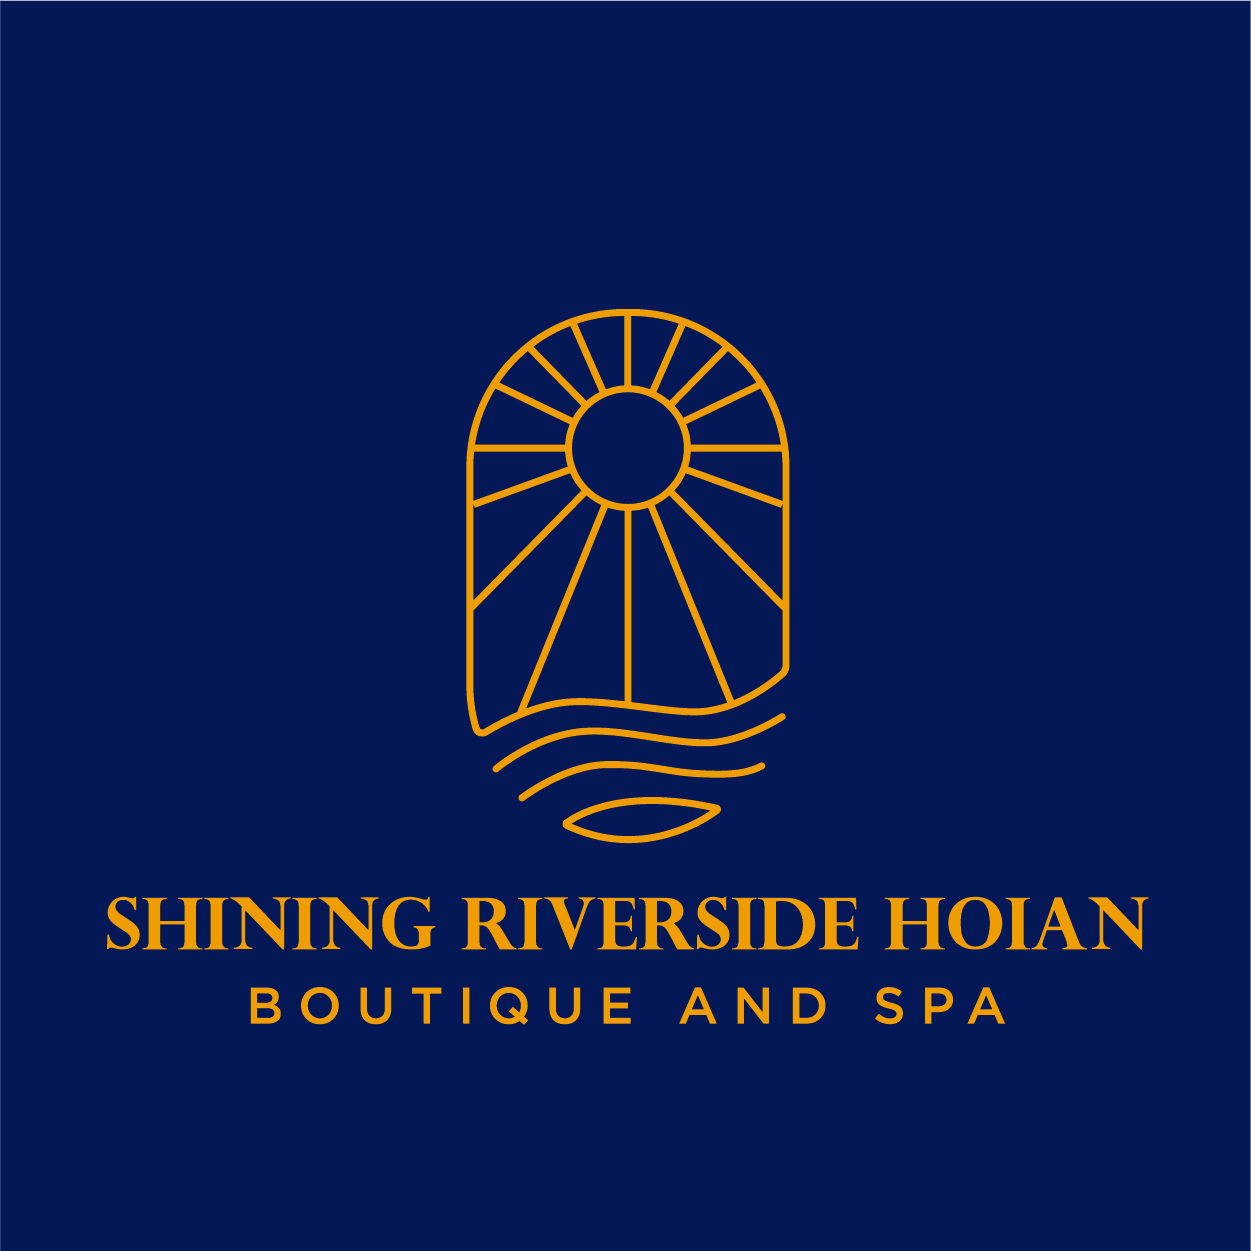 SHINING RIVERSIDE HOI AN BOUTIQUE & SPA